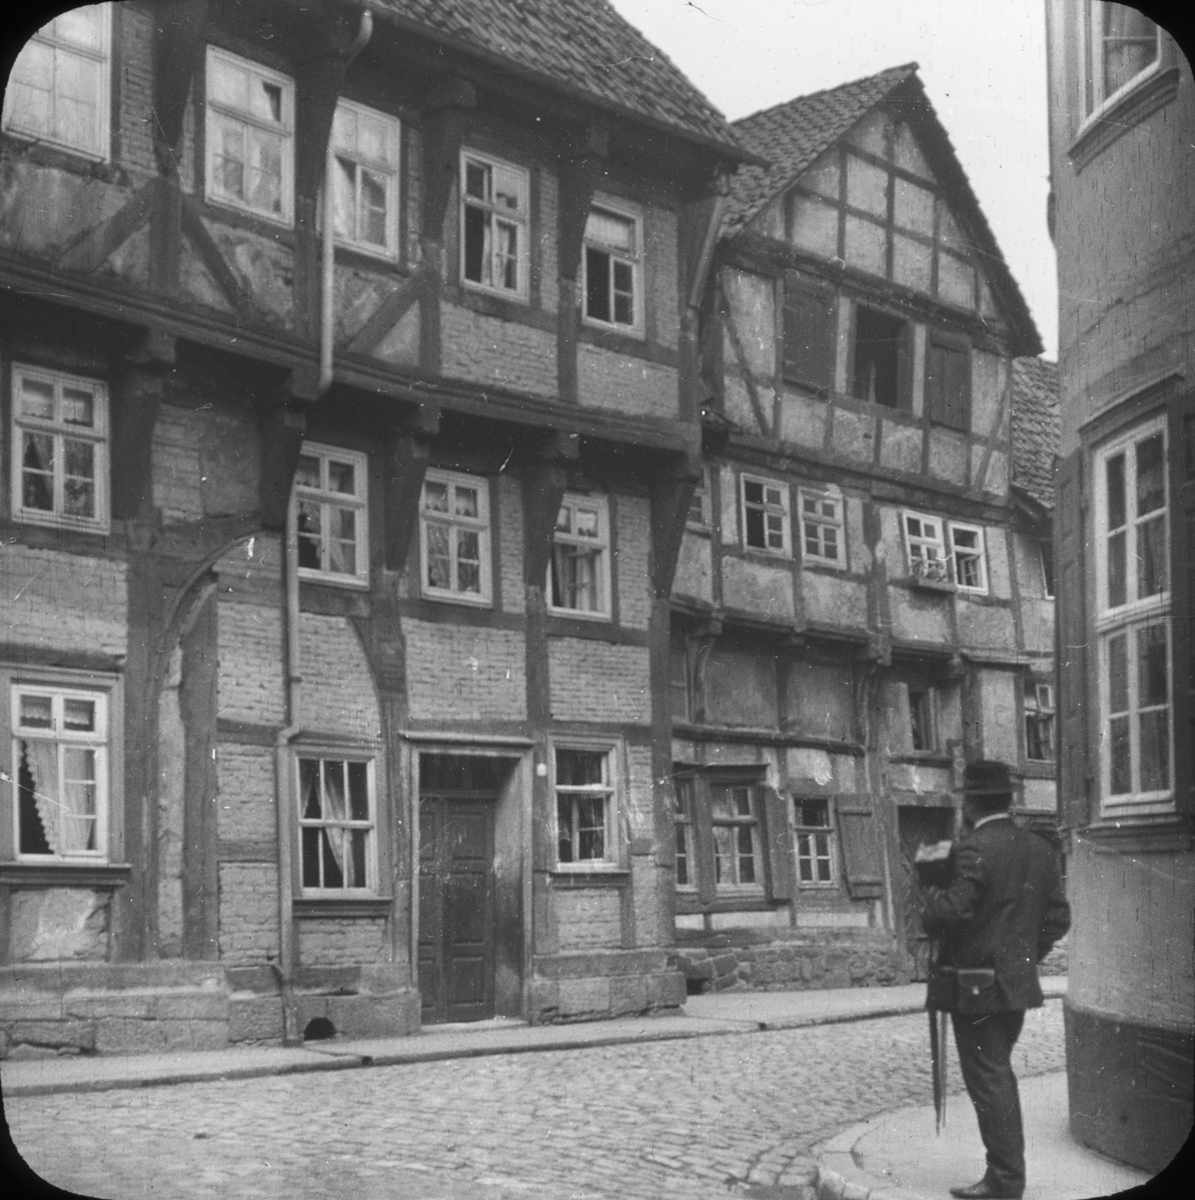 Skioptikonbild med motiv av man som betraktar ett äldre hus, Hannoversch-Münden.
Bilden har förvarats i kartong märkt: Resan 1904. München